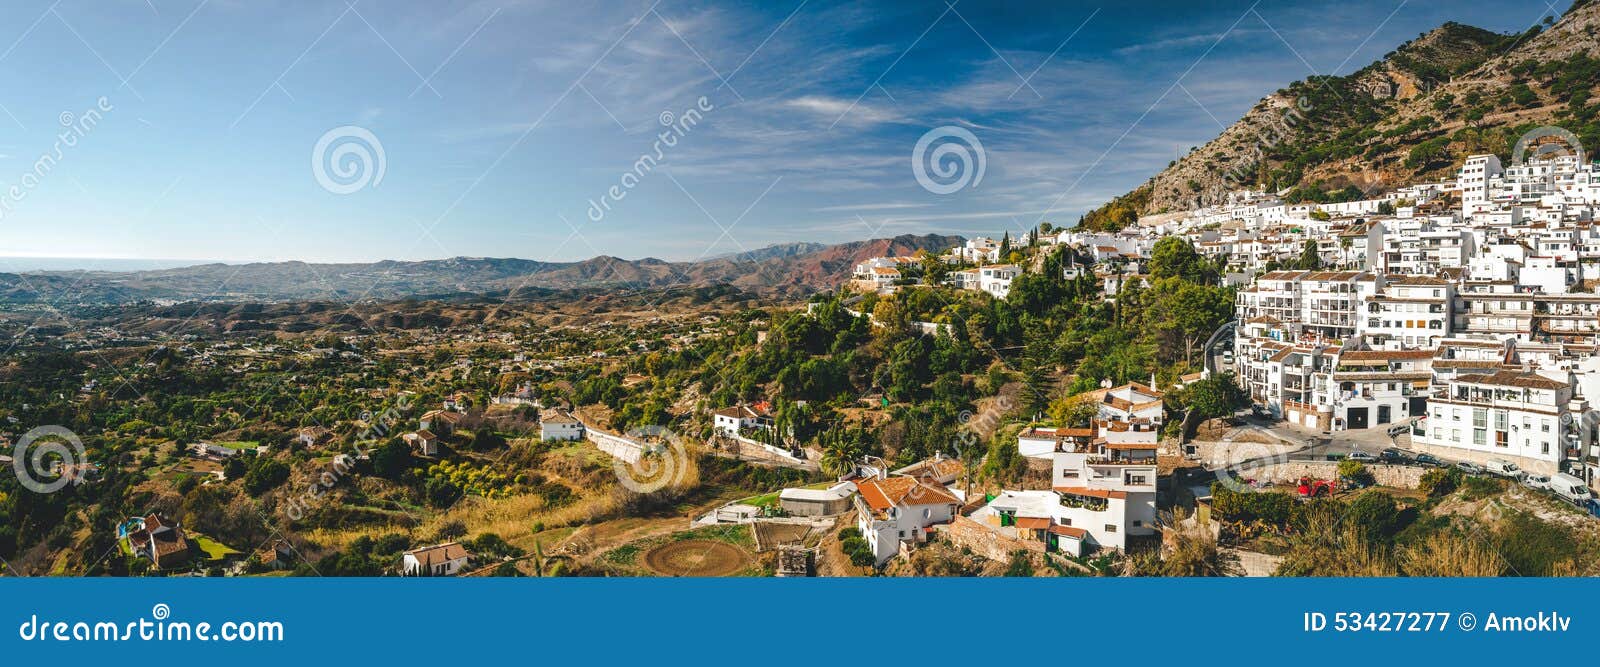 panorama of white village of mijas